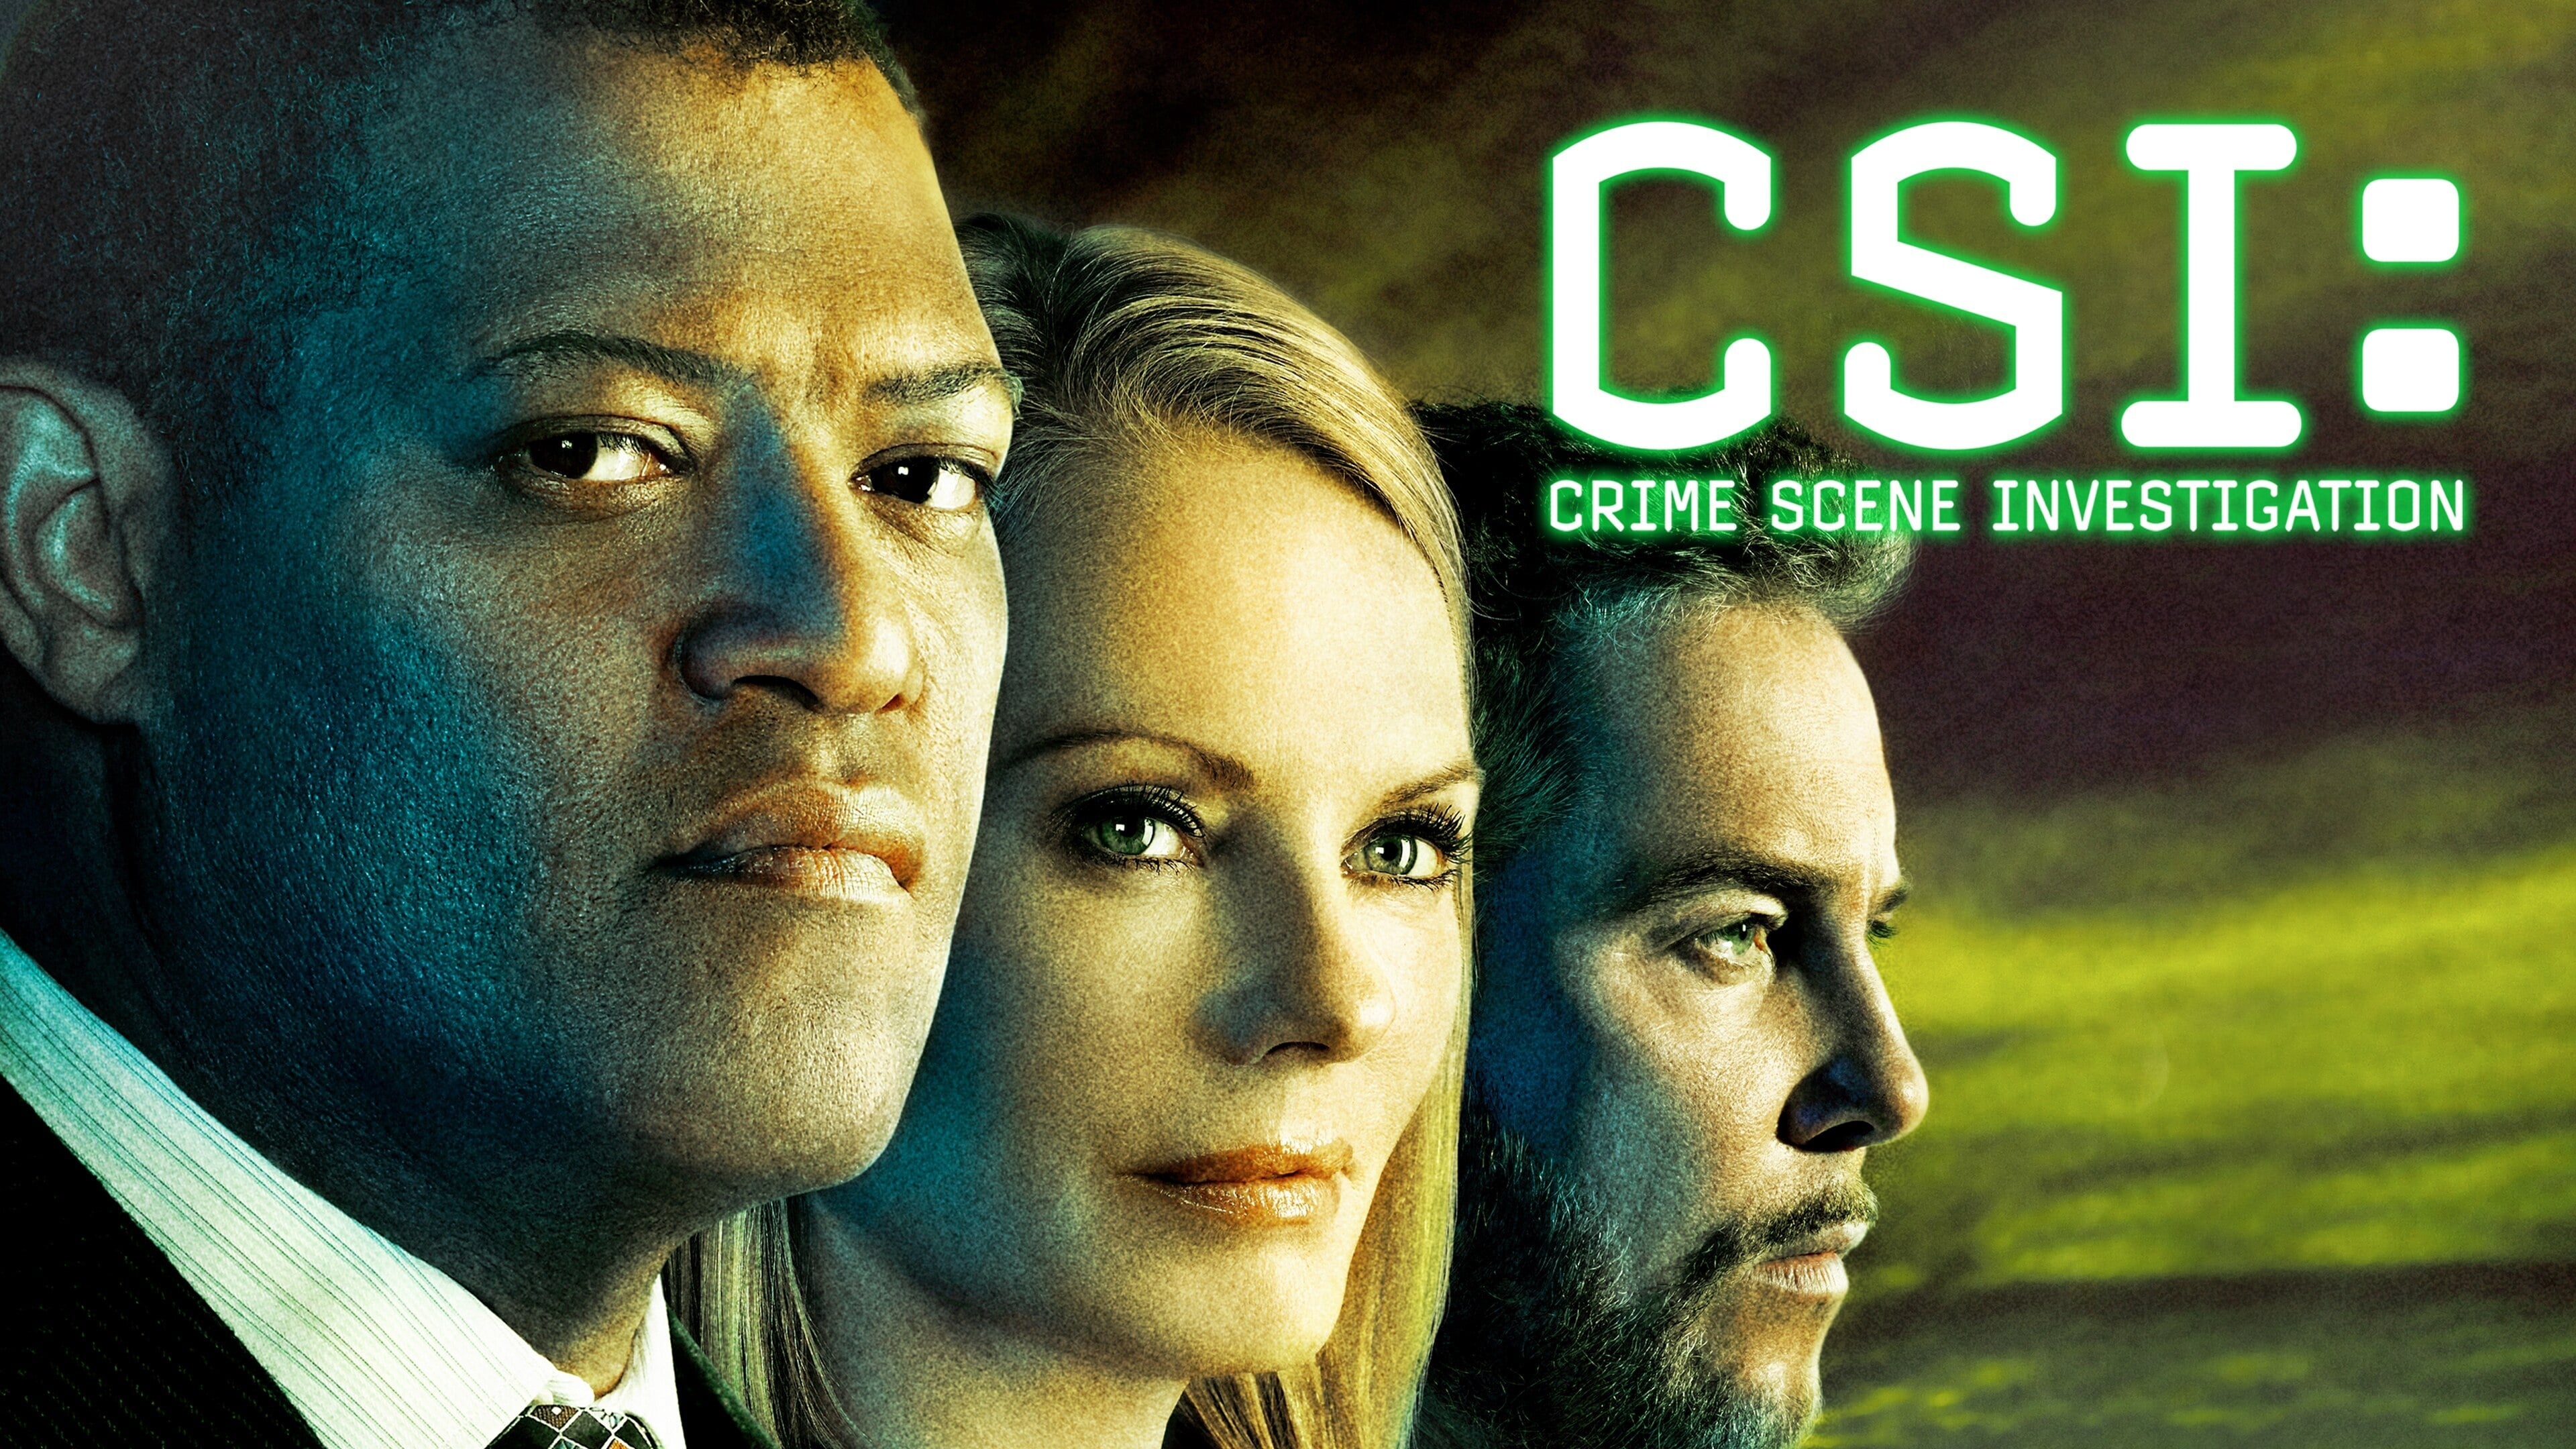 سي اس آي: التحقيق في مسرح الجريمة - Season 15 Episode 3